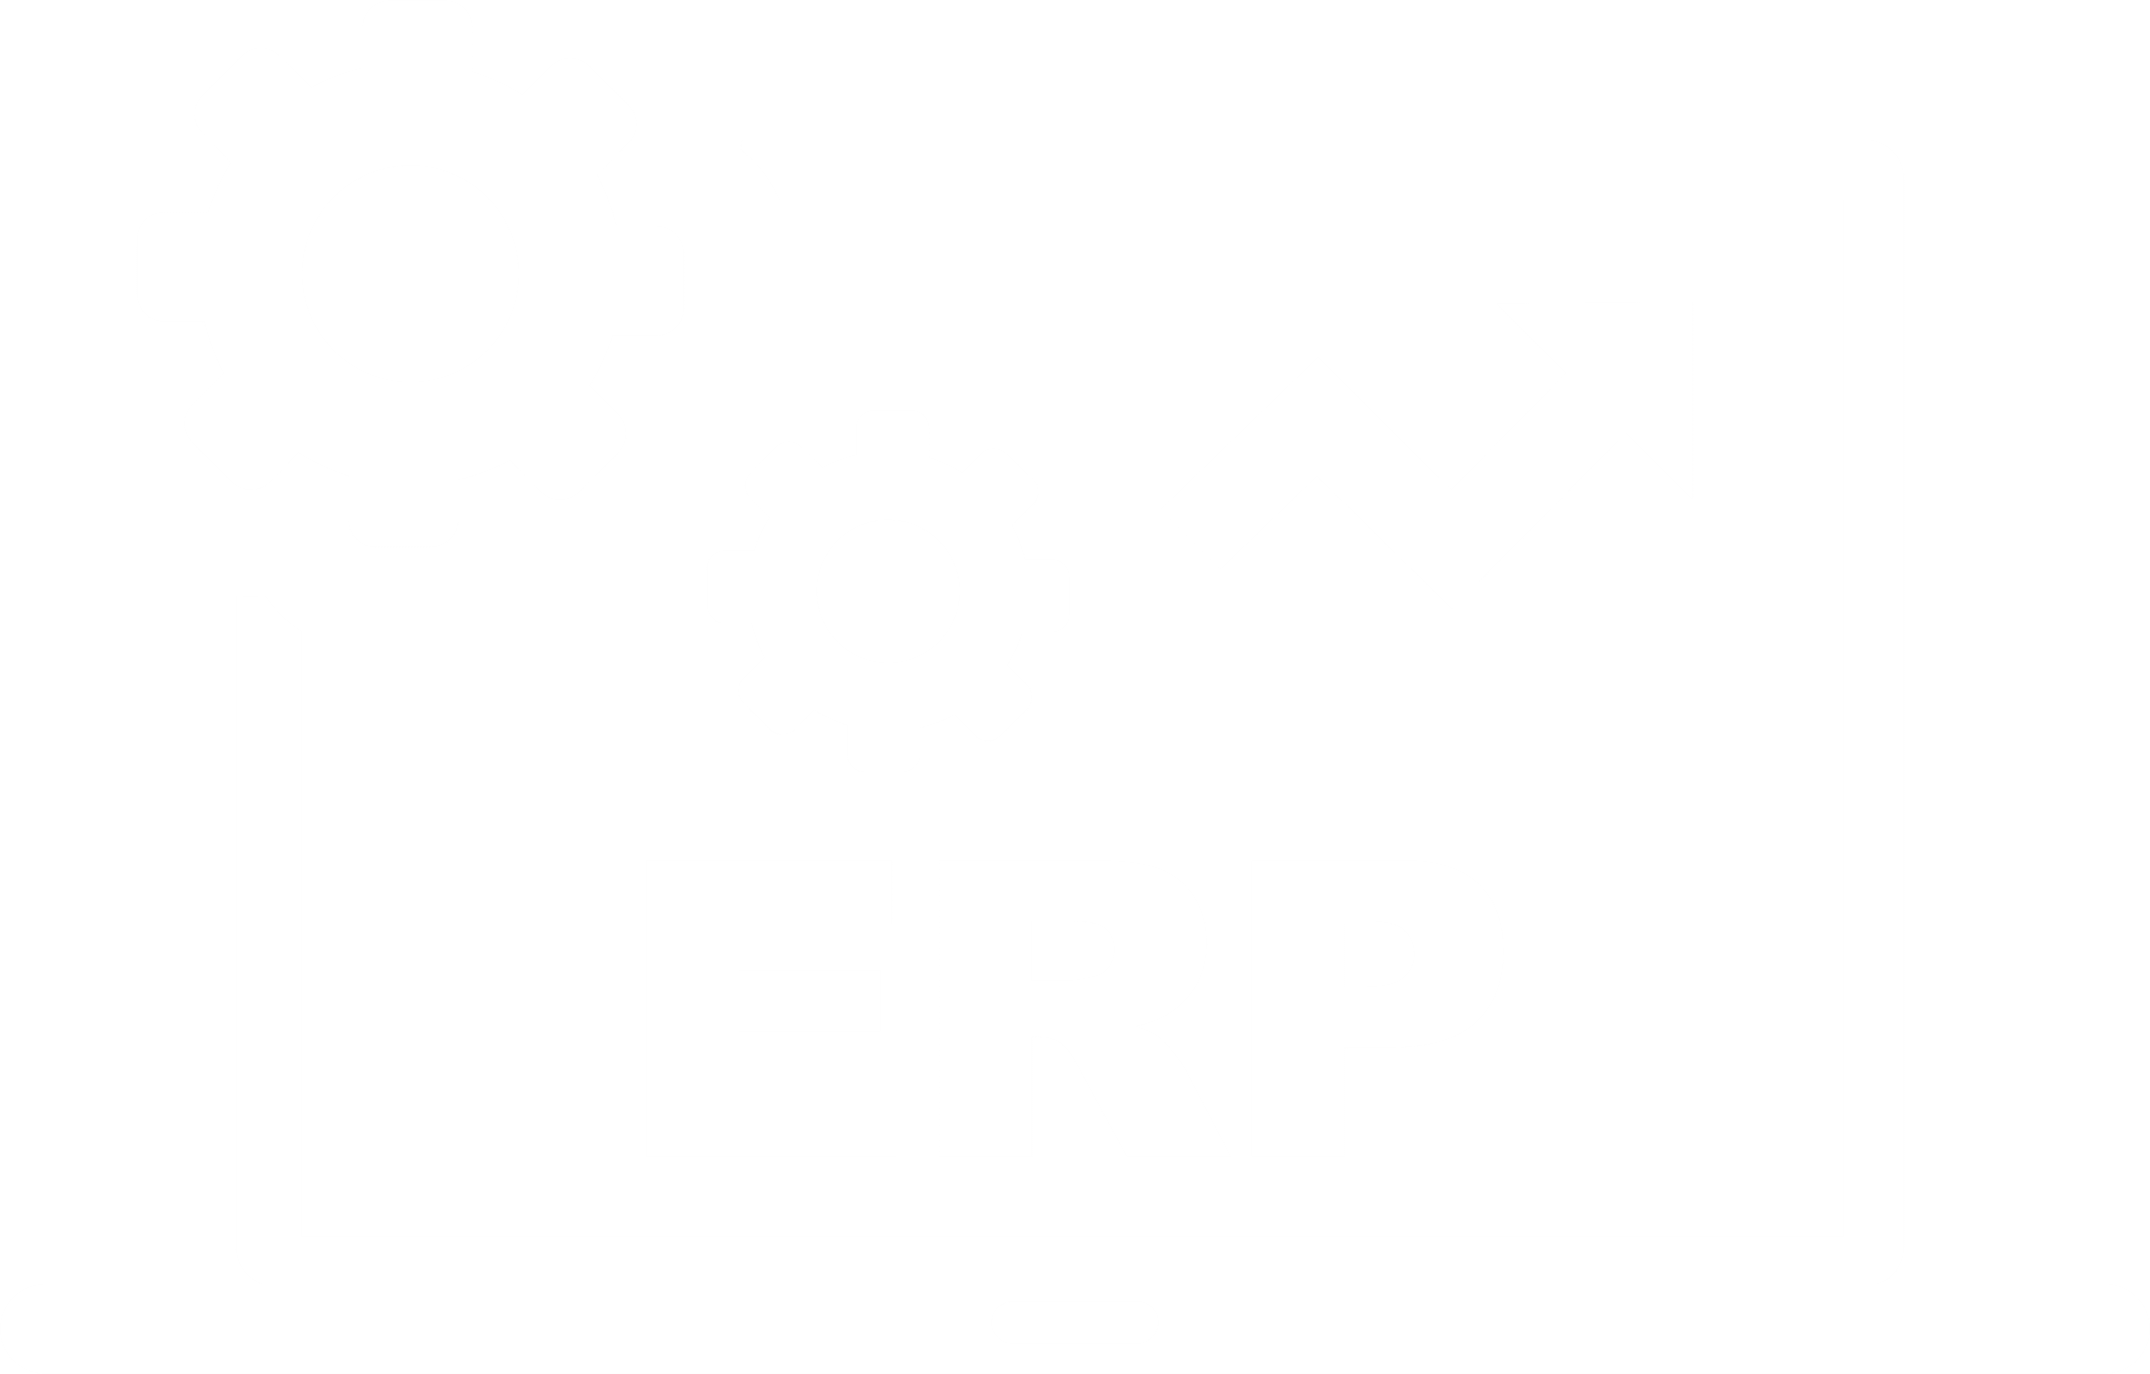 Open source ERP software